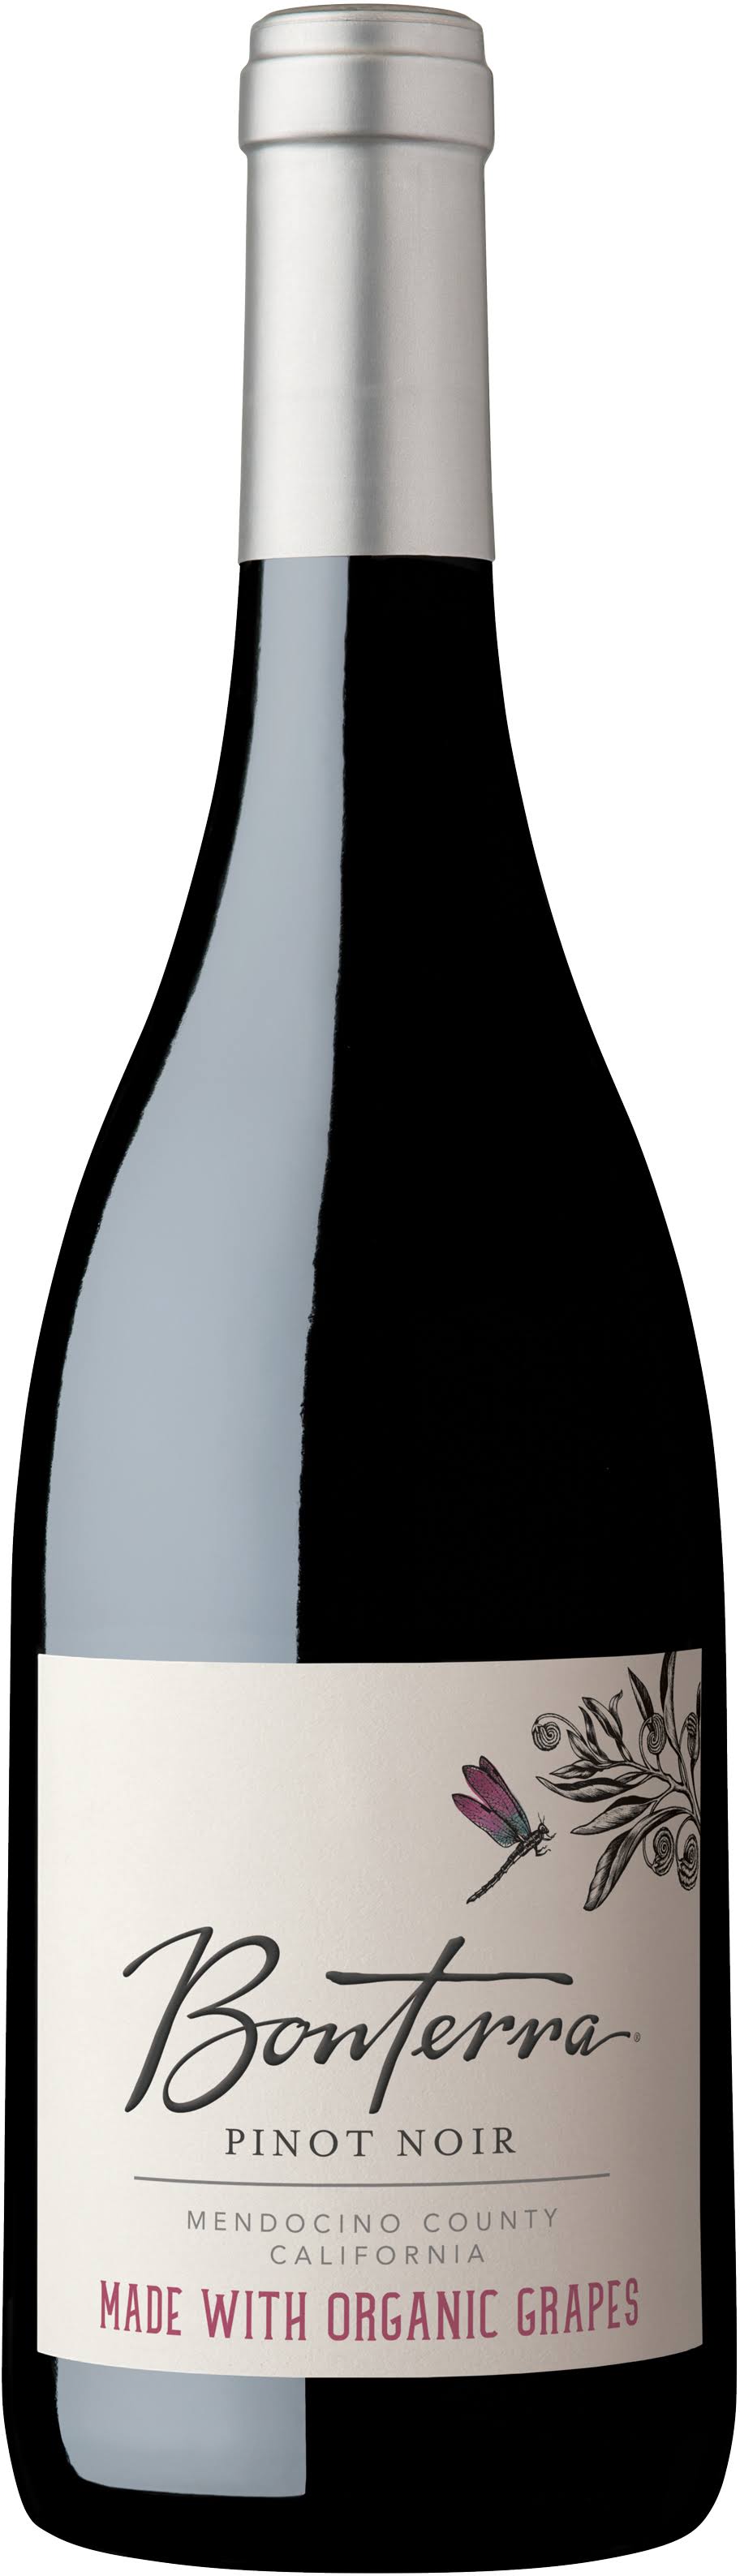 Bonterra Pinot Noir, Mendocino County California - 750 ml